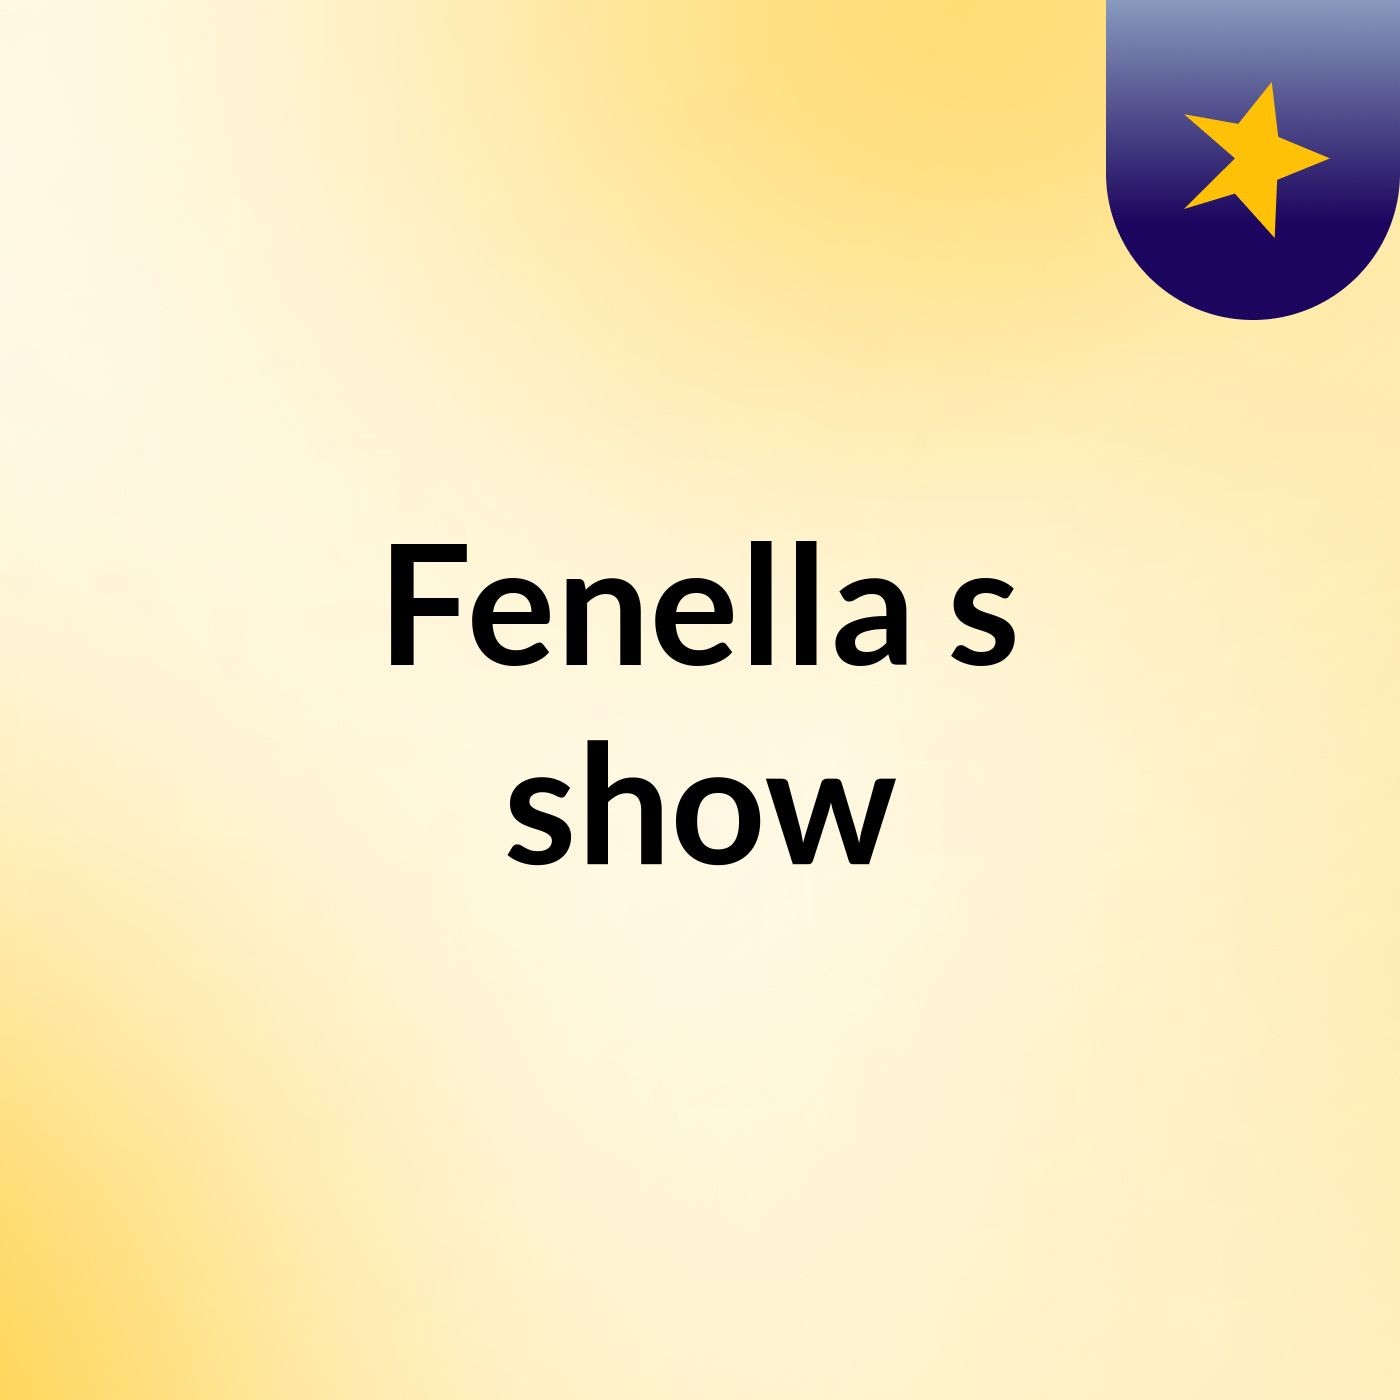 Fenella's show